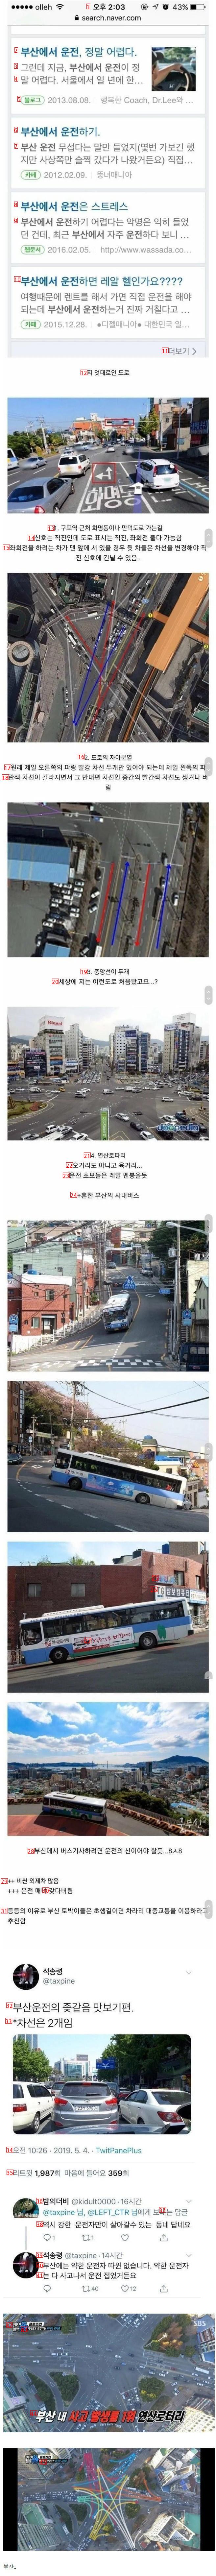 大韓民国で最も運転しにくい都市